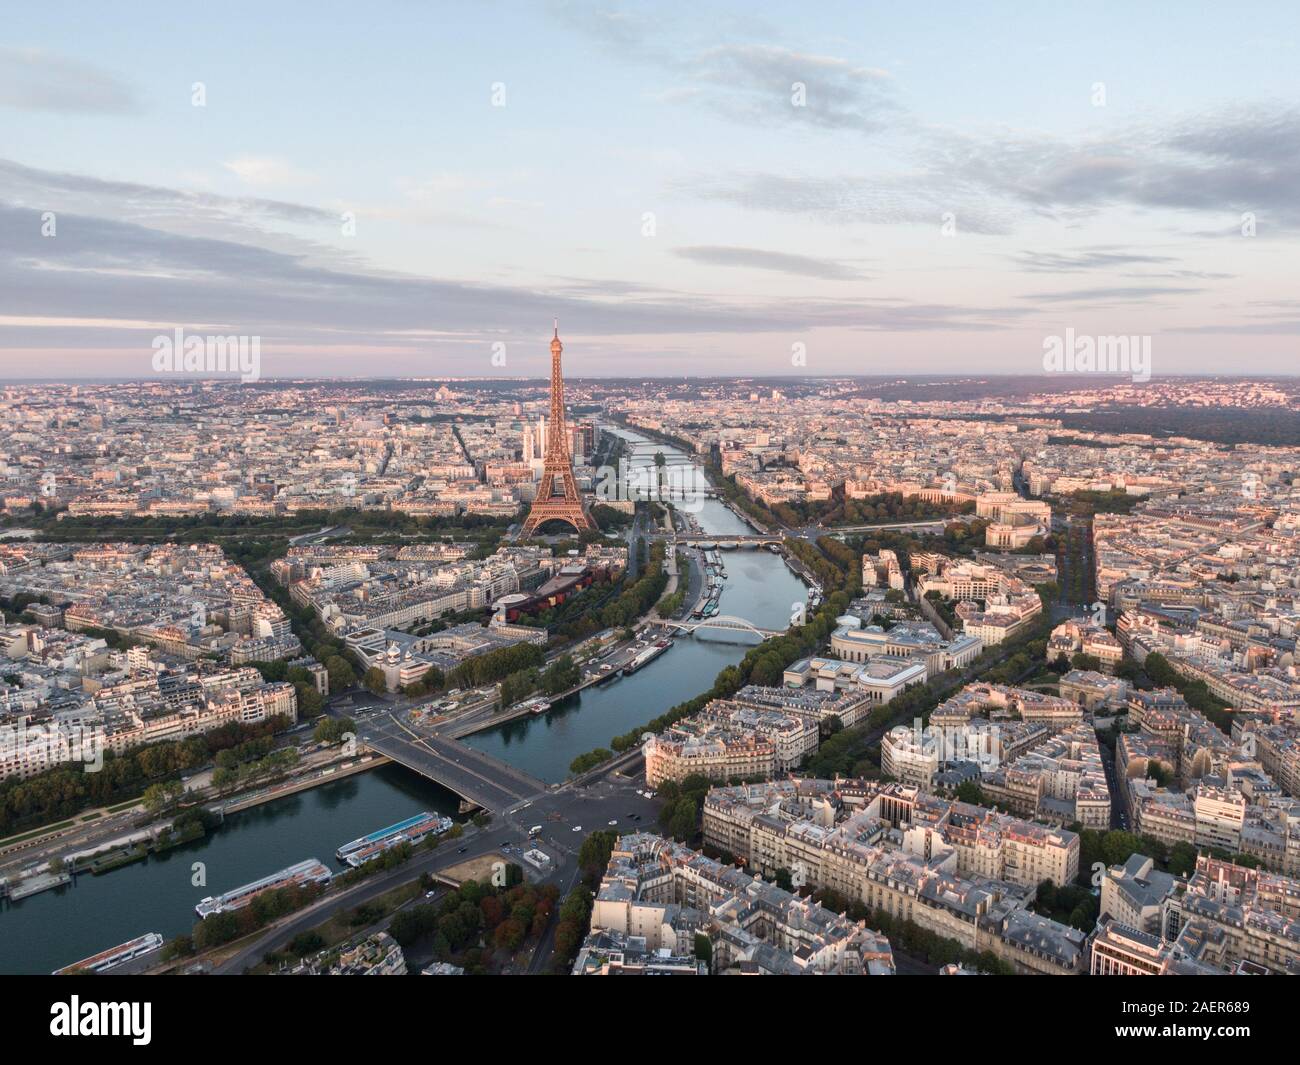 Paysage urbain de Paris, France avec la Tour Eiffel en vue Banque D'Images